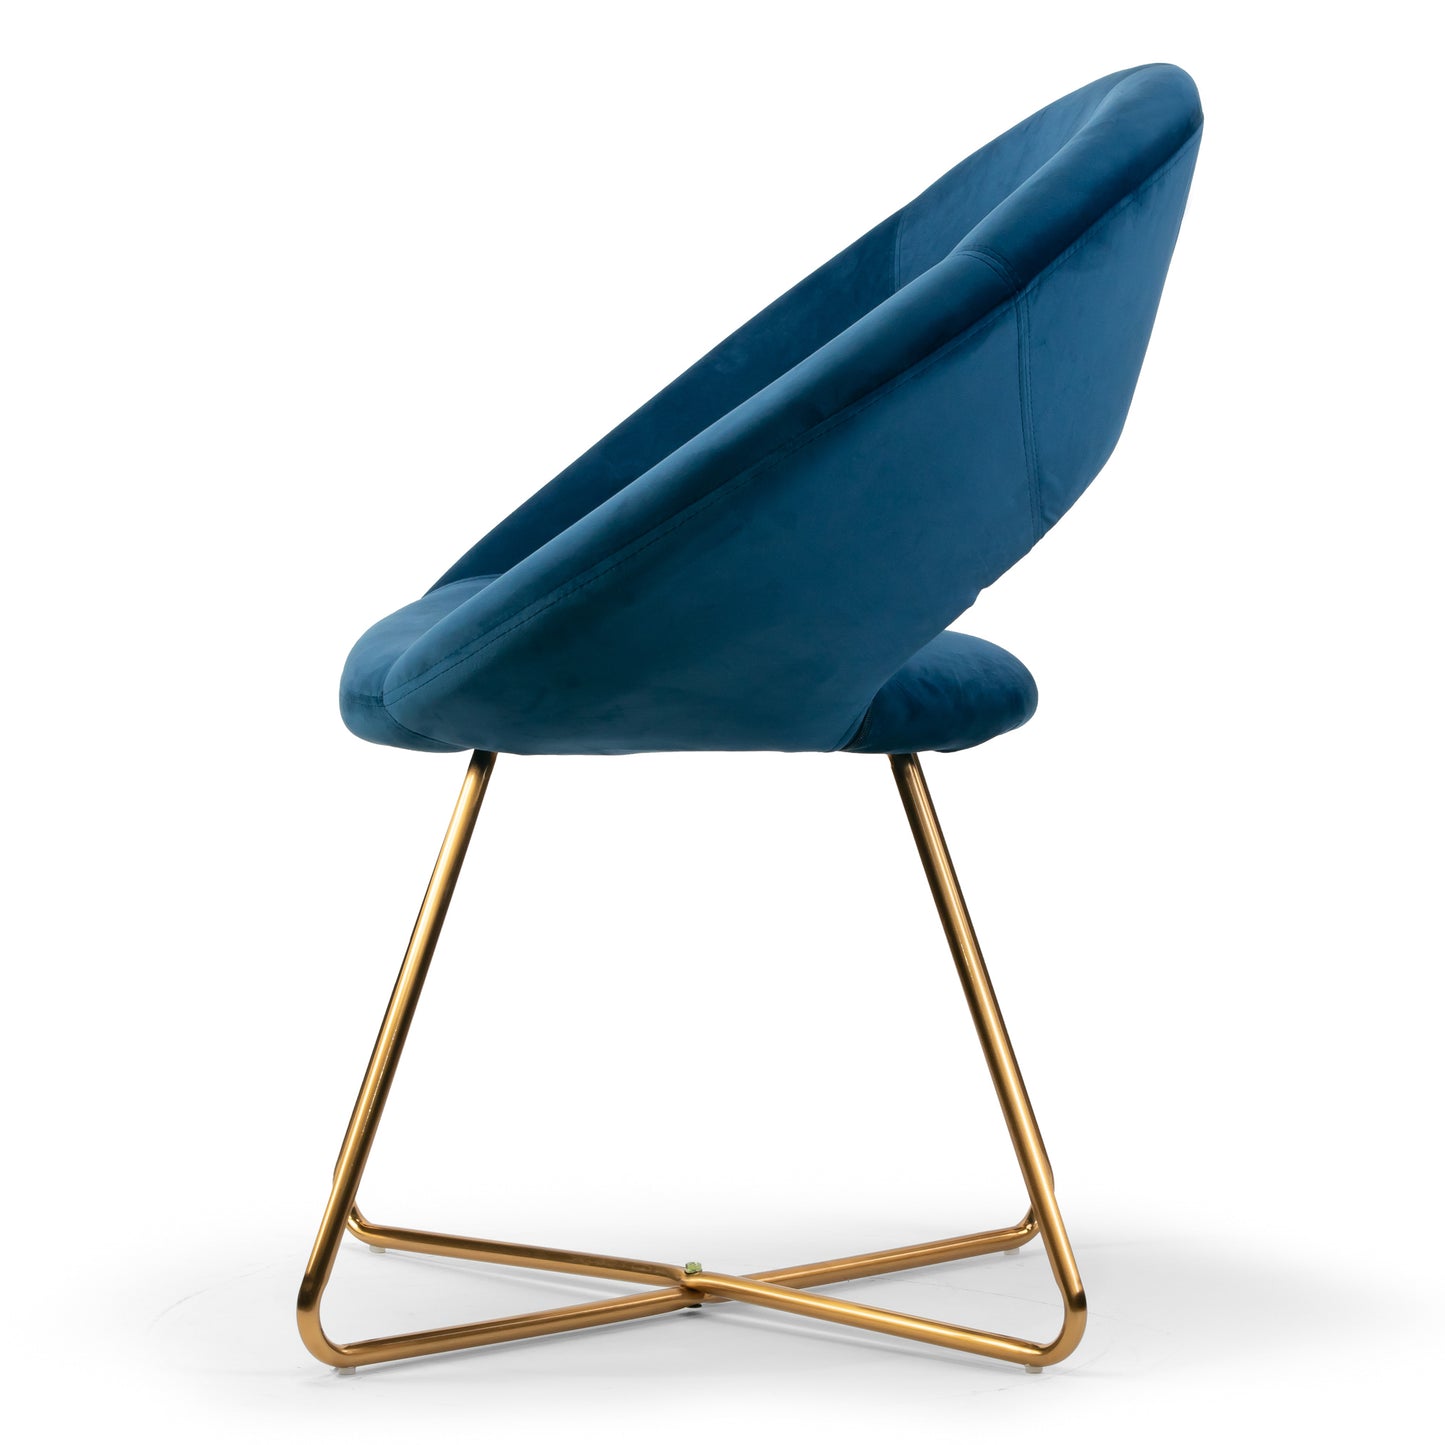 Set of 2 Amor Blue Velvet Dining Chair with Golden Metal Legs